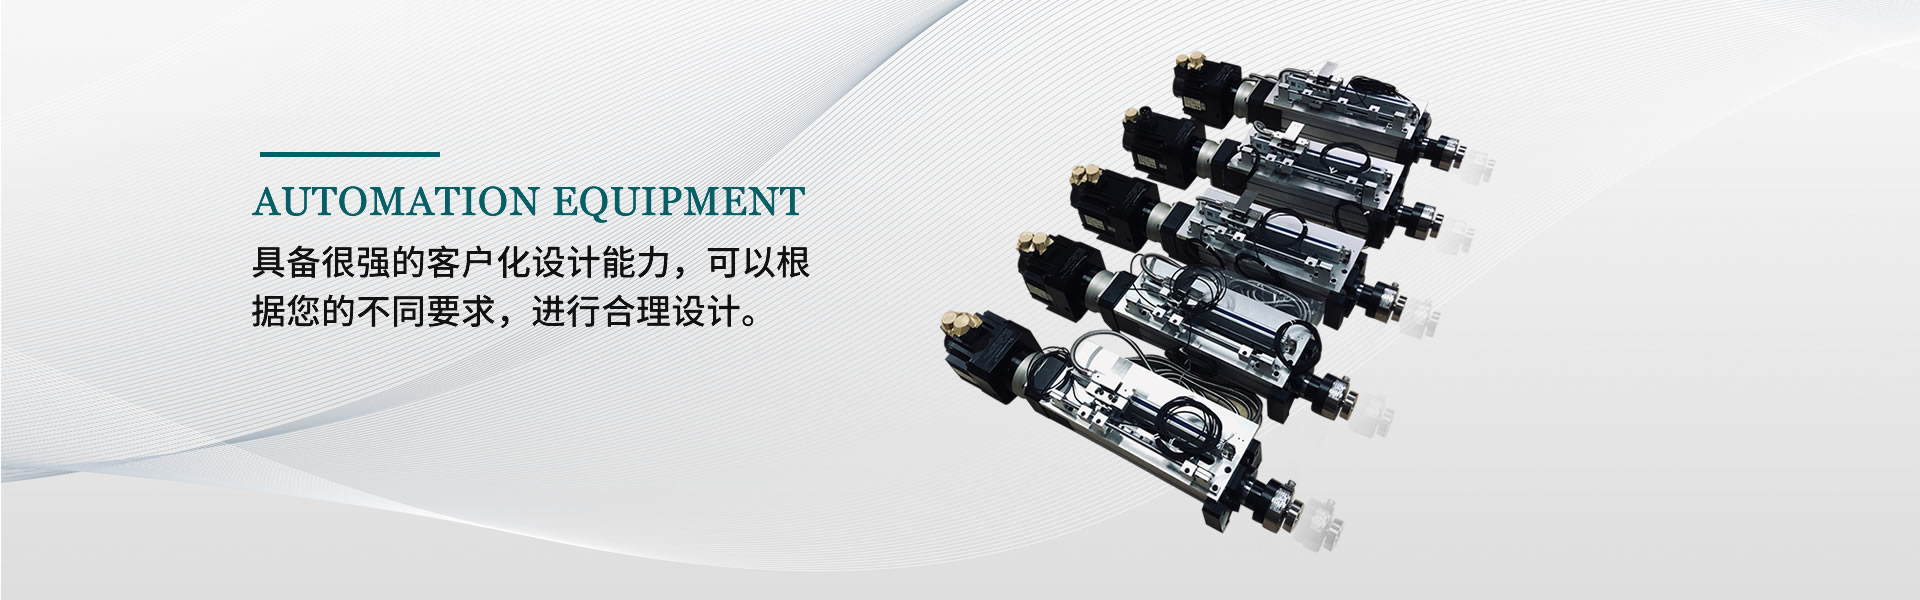 钛格机器人科技(江苏)有限公司